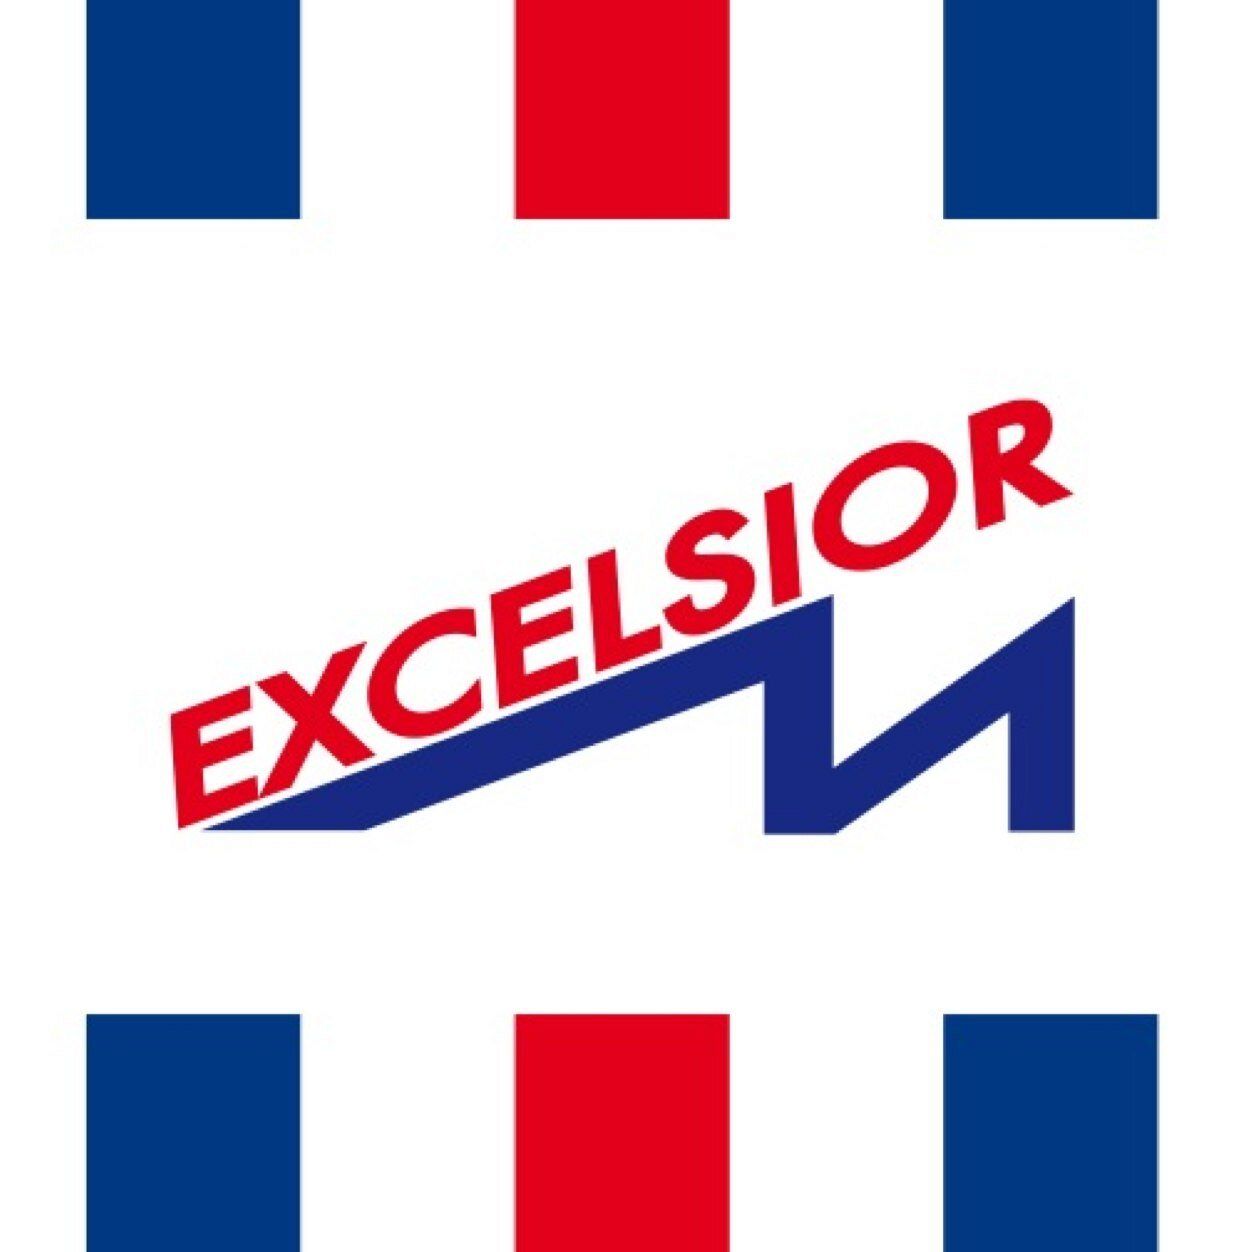 Excelsior start competitie met winst